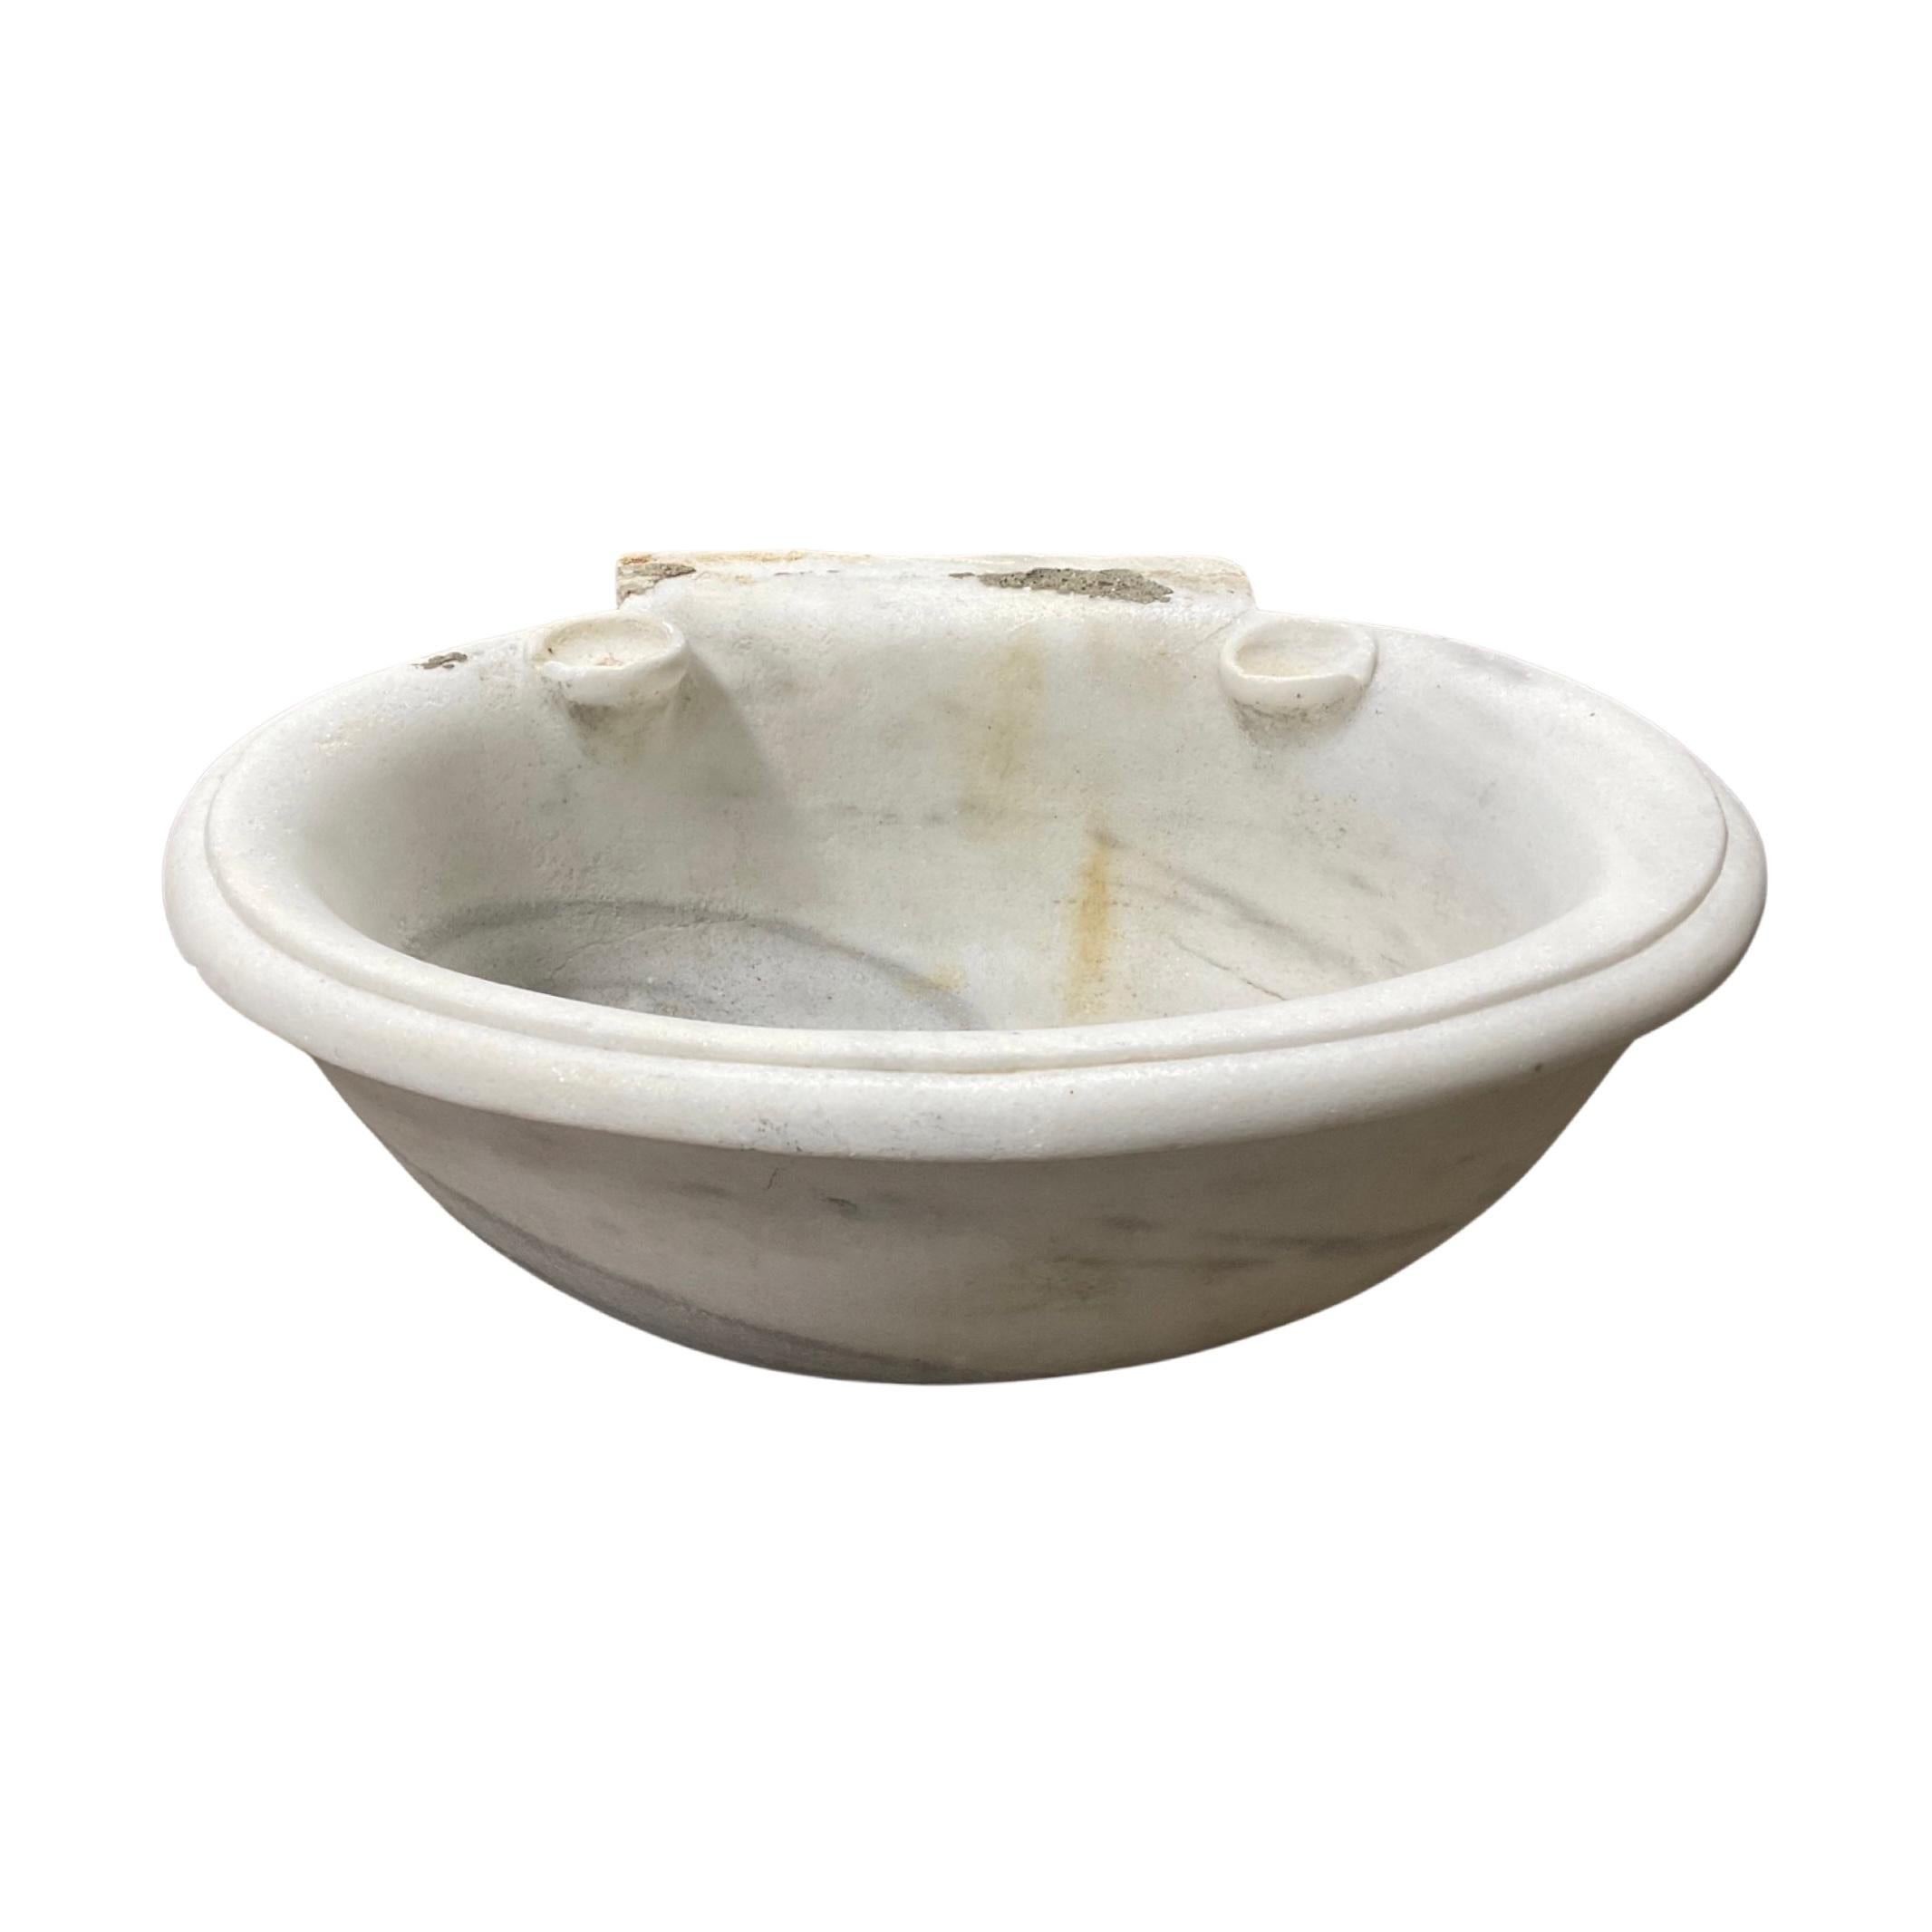 Unser Waschbecken aus weißem französischem Marmor wird aus handverlesenem Marmor aus dem 18. Jahrhundert gefertigt und garantiert ein herrschaftliches und zeitloses Aussehen. Seine einzigartige Textur und Musterung verleihen Ihrem Bad eine